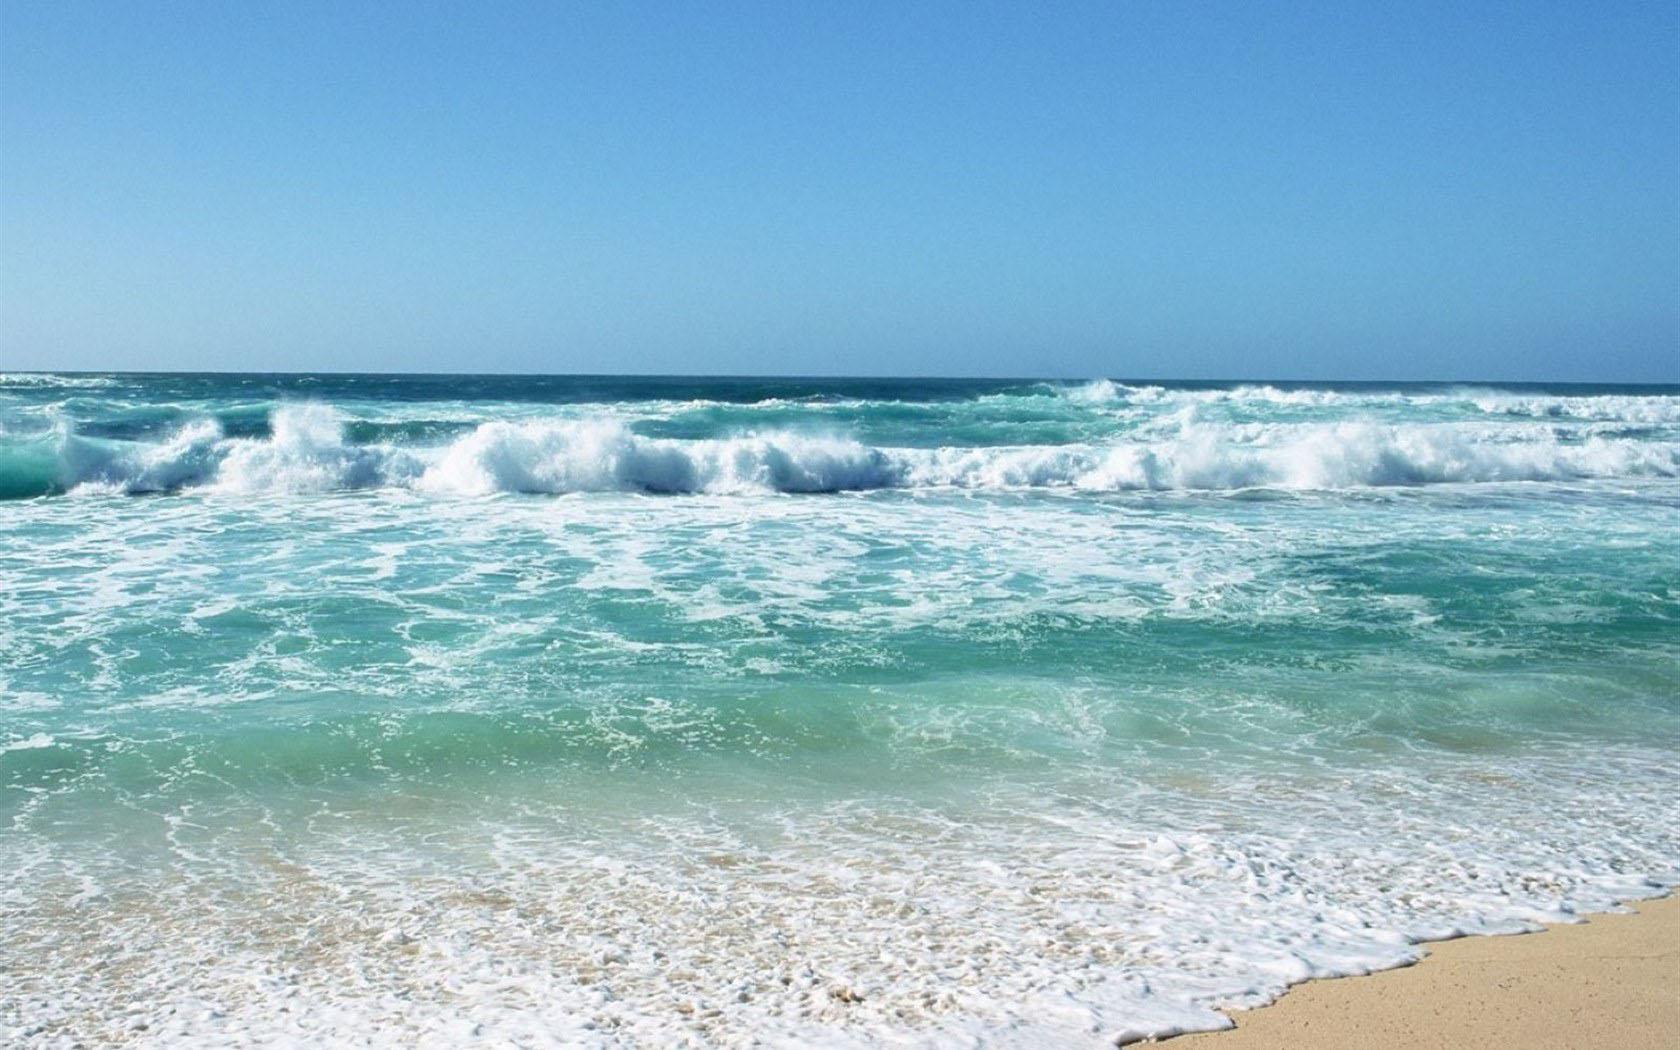 壁纸1680×1050夏威夷的碧海蓝天 Hawaii 夏威夷海滩图片 清澈海水波浪壁纸,夏威夷浪漫海滩壁纸图片-风景壁纸-风景图片素材-桌面壁纸